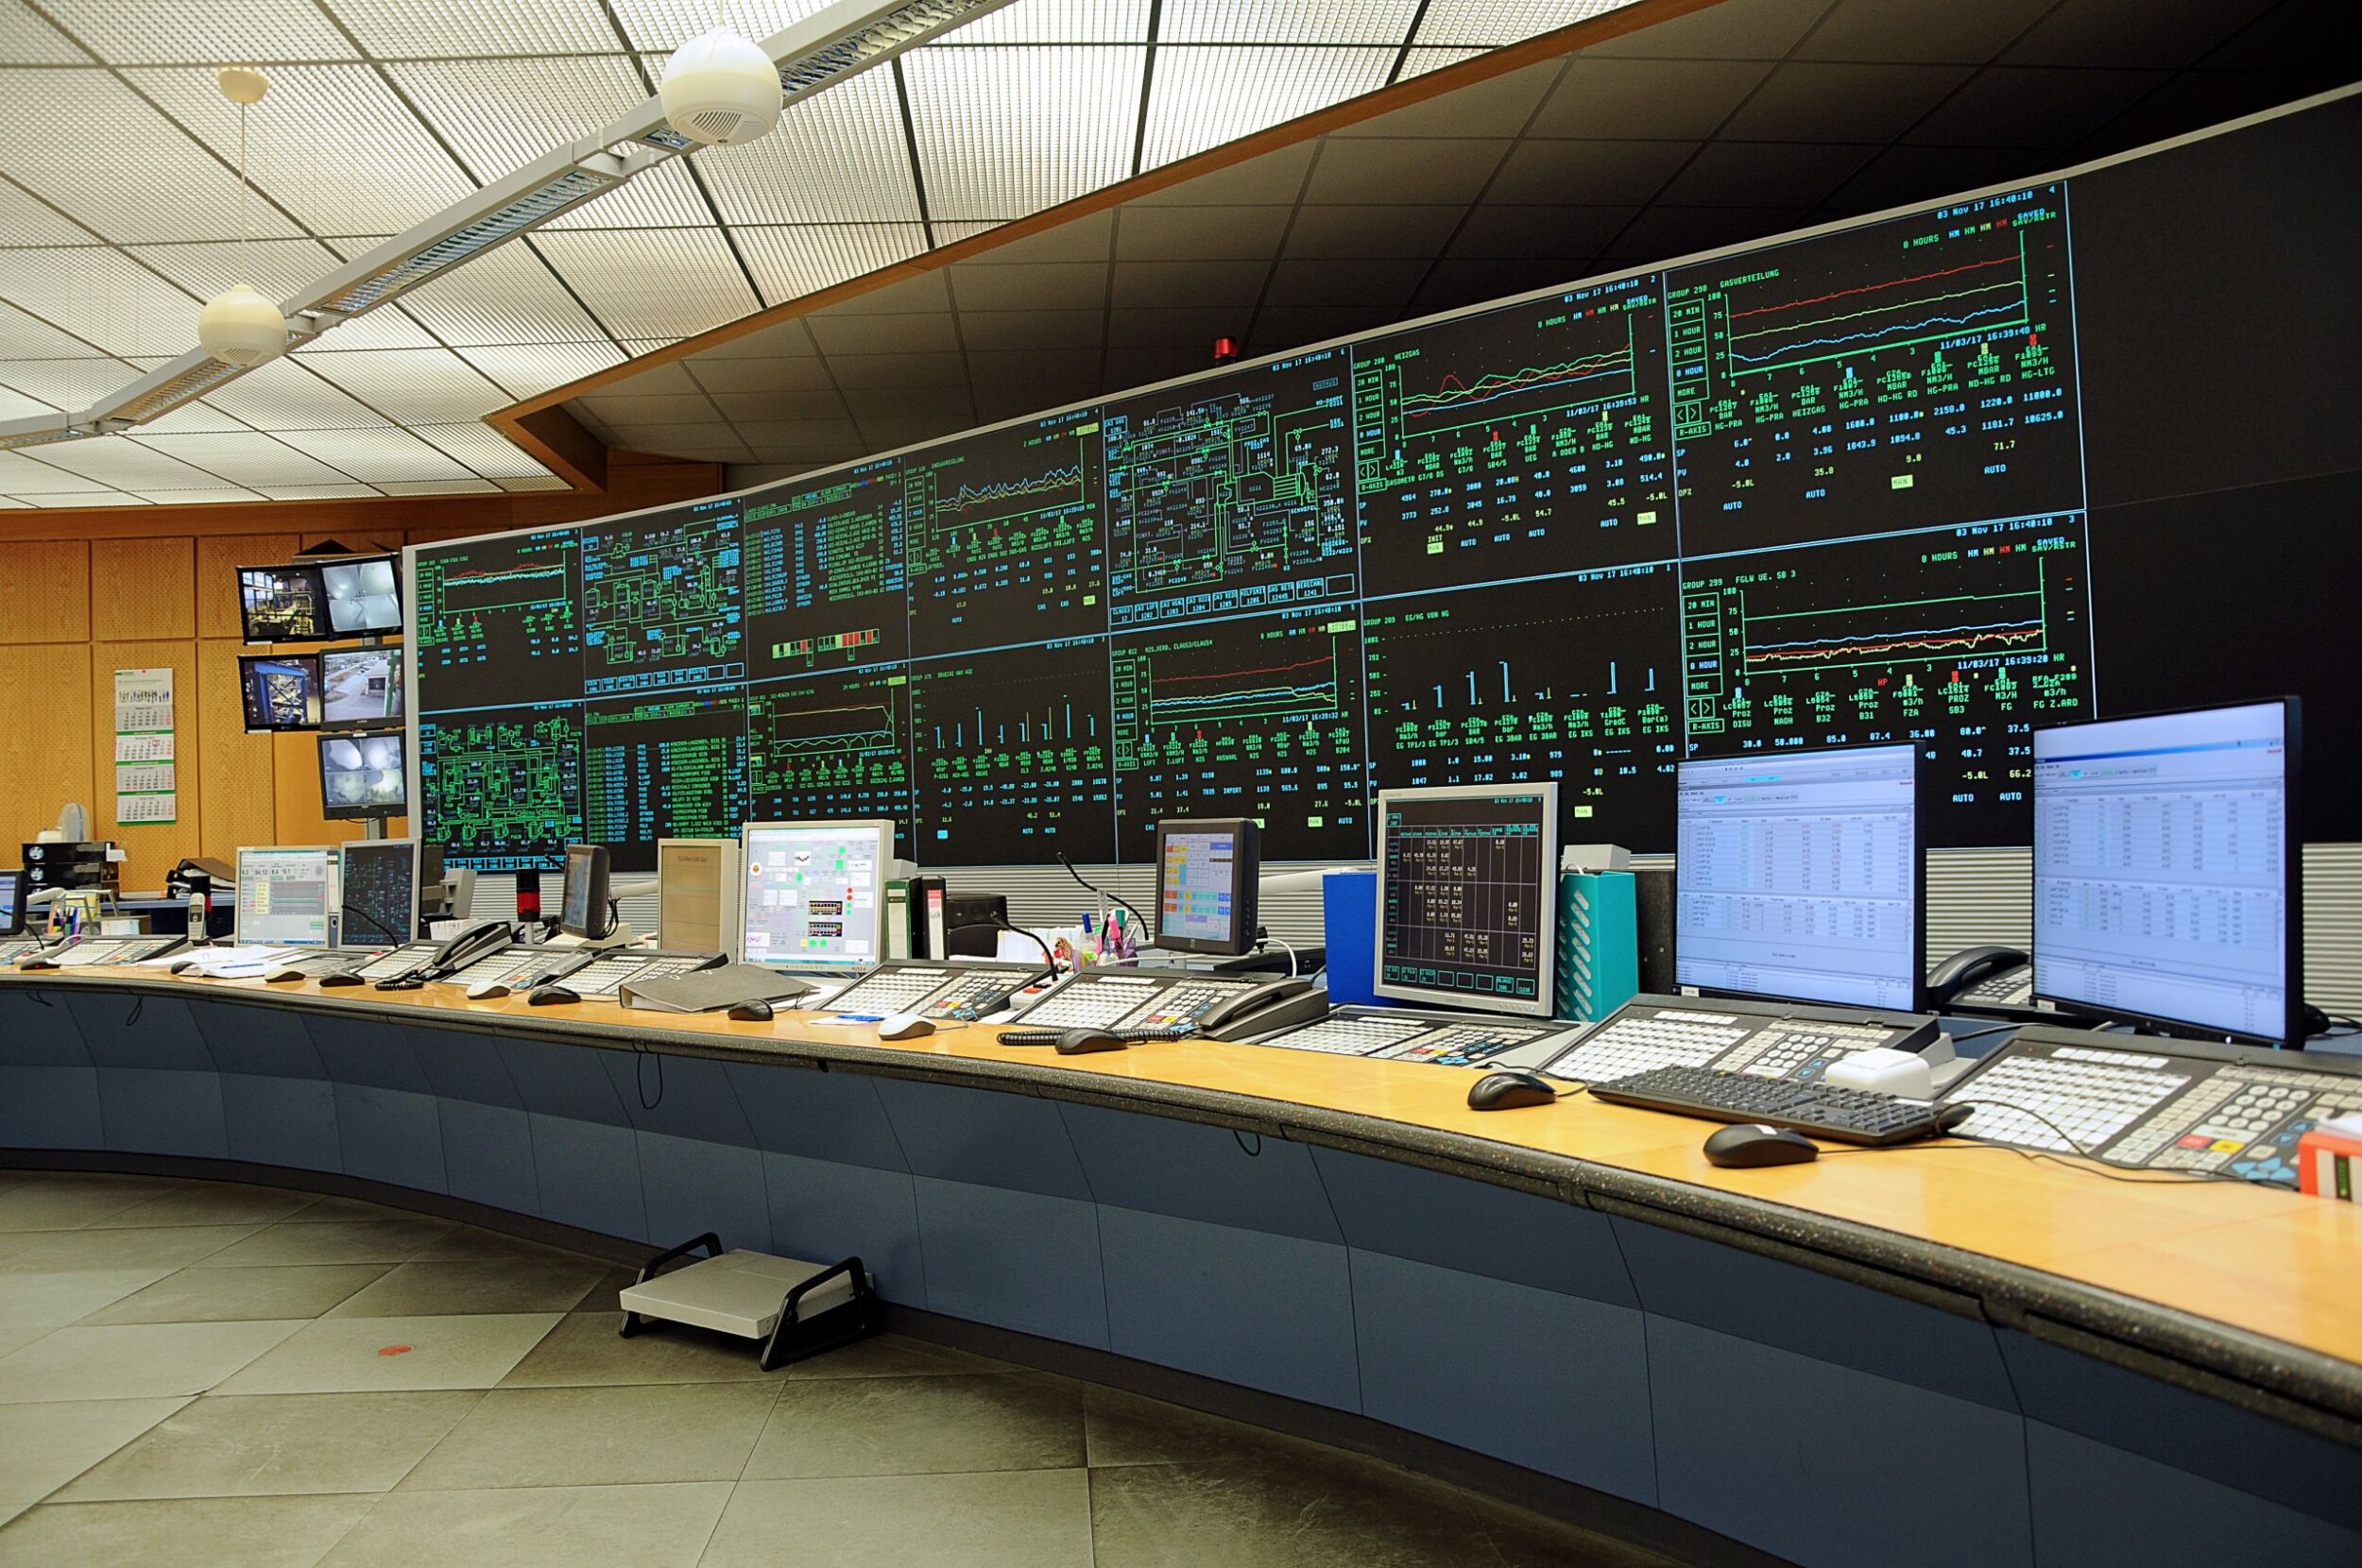 Bis April 2016 wurden alle Produktionsanlagen über eine zentrale Messwarte aus dem Jahr 1993 überwacht und gesteuert, die im Laufe der Zeit jedoch zu klein geworden war. (Bild: Jungmann Systemtechnik GmbH & Co. KG)